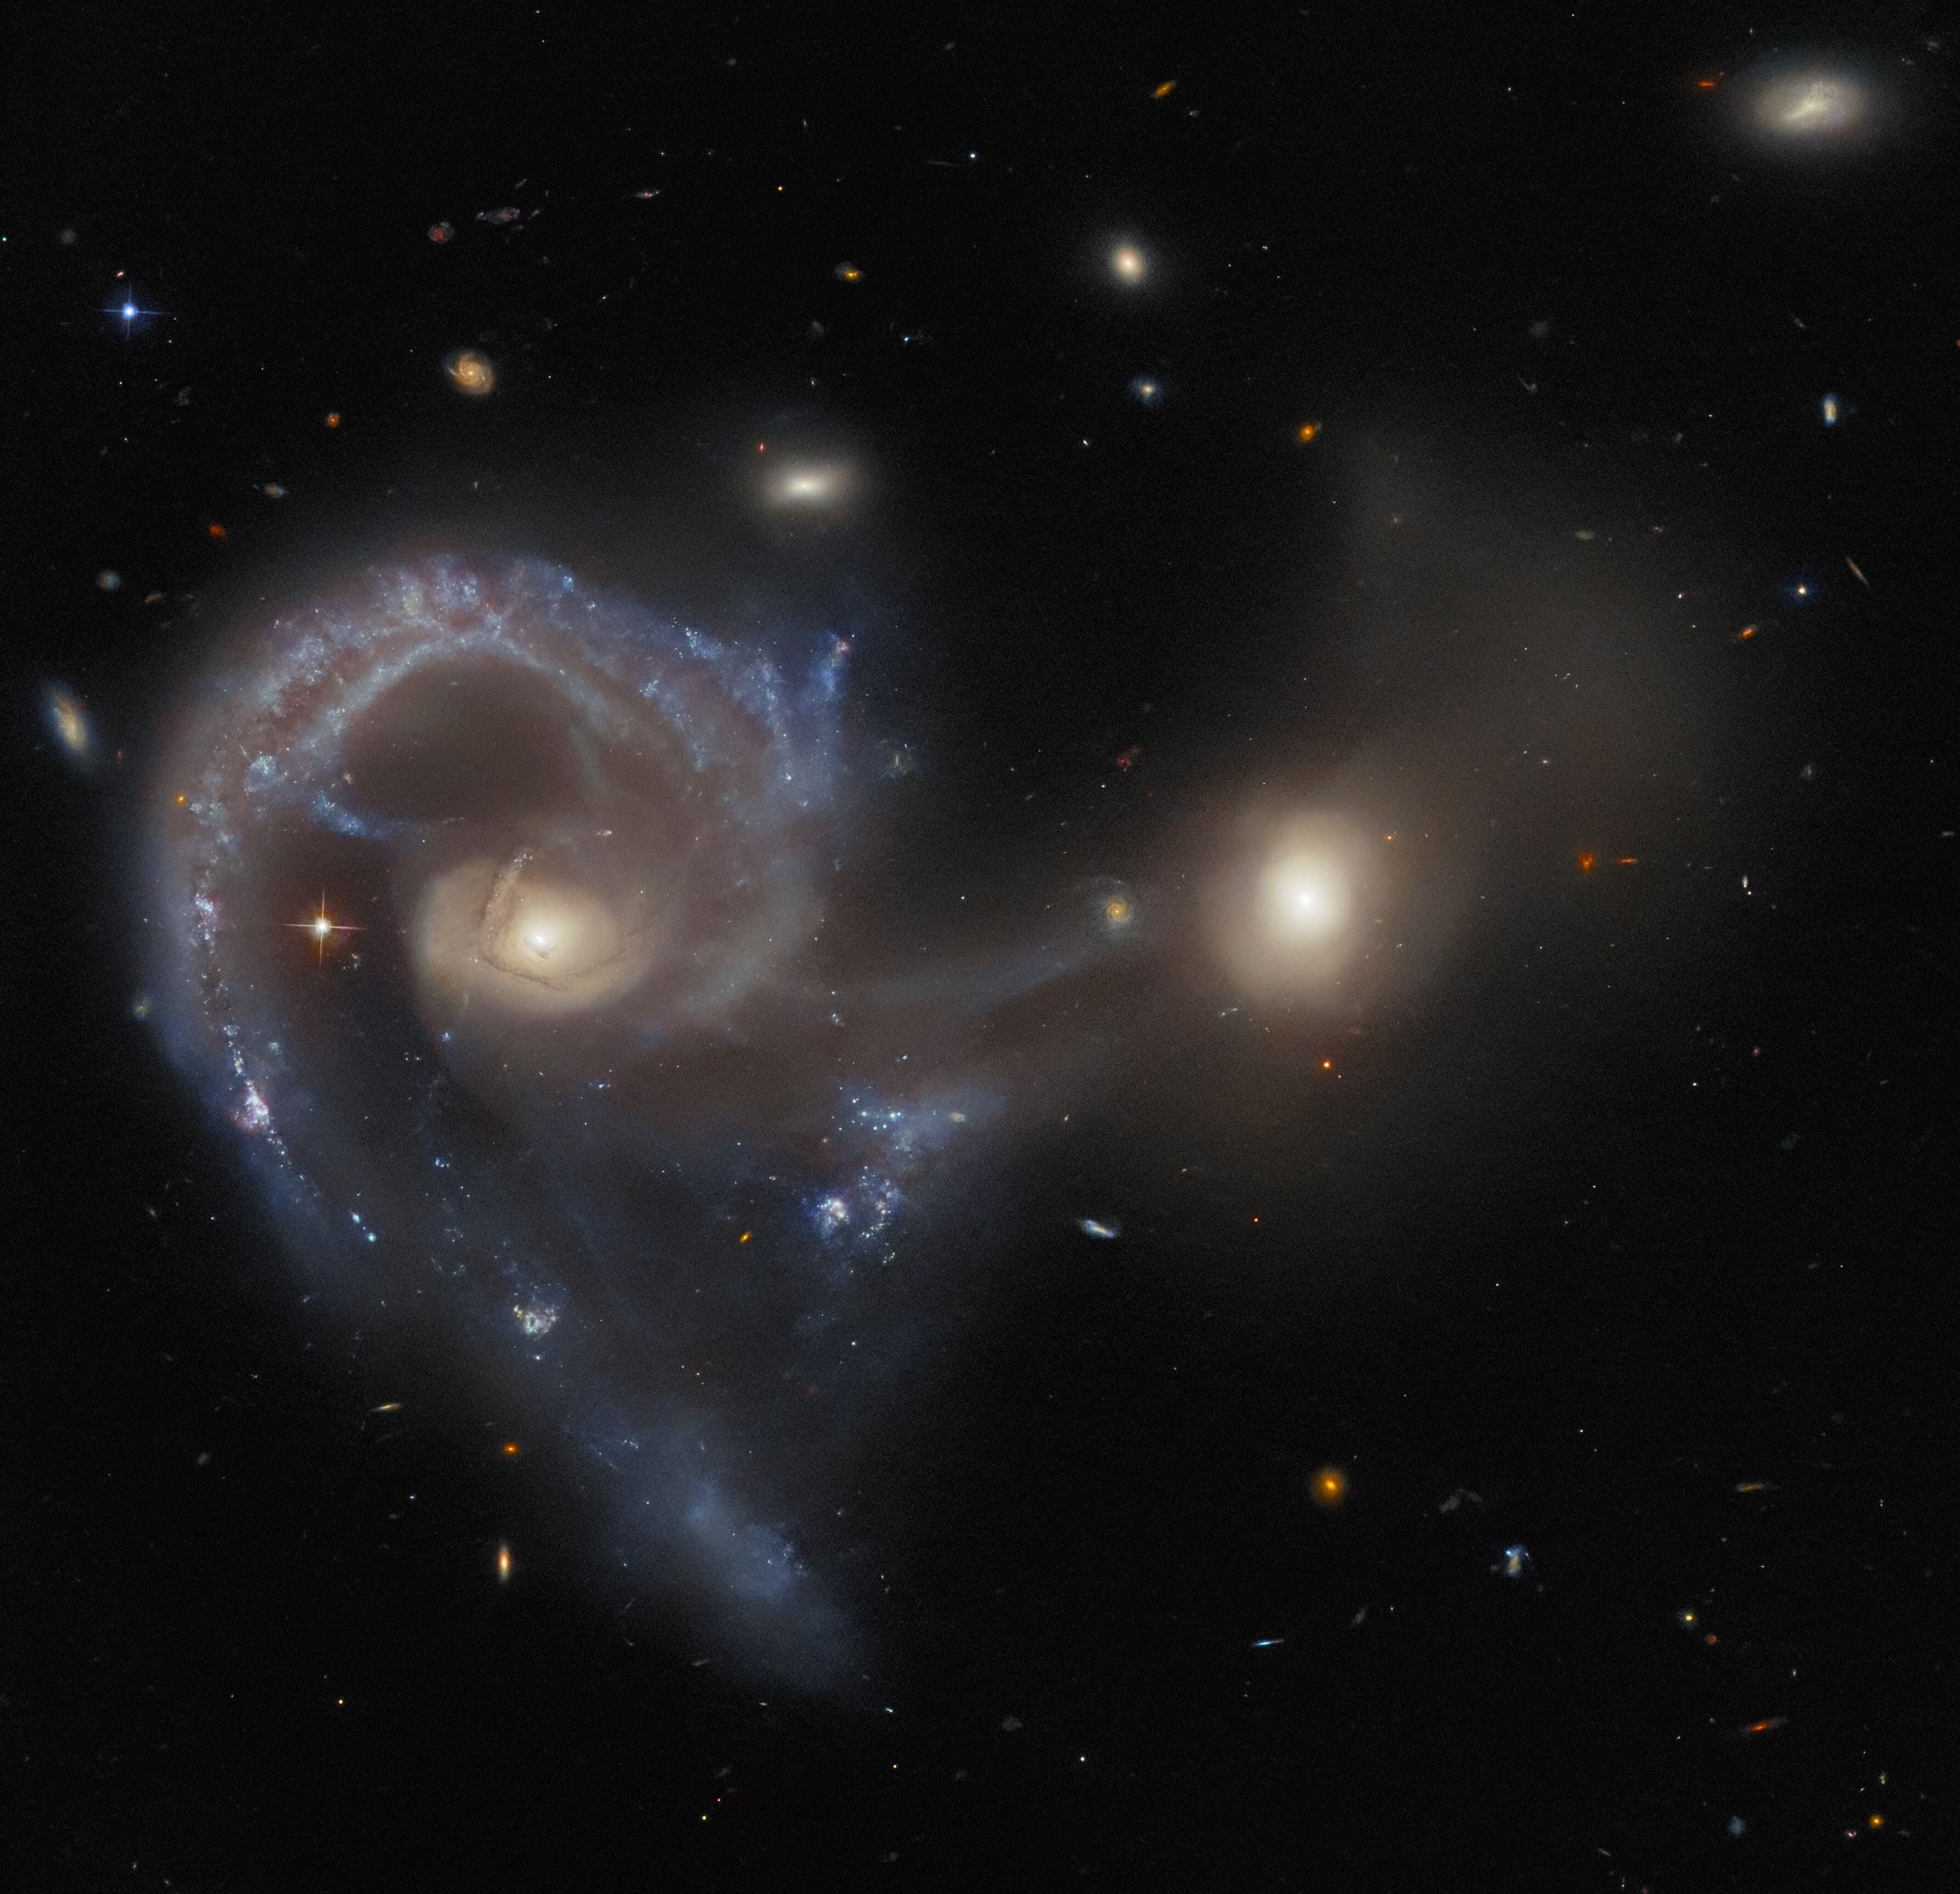 Космический телескоп Хаббл запечатлел пару галактик Arp 107, находящуюся в эпицентре столкновения